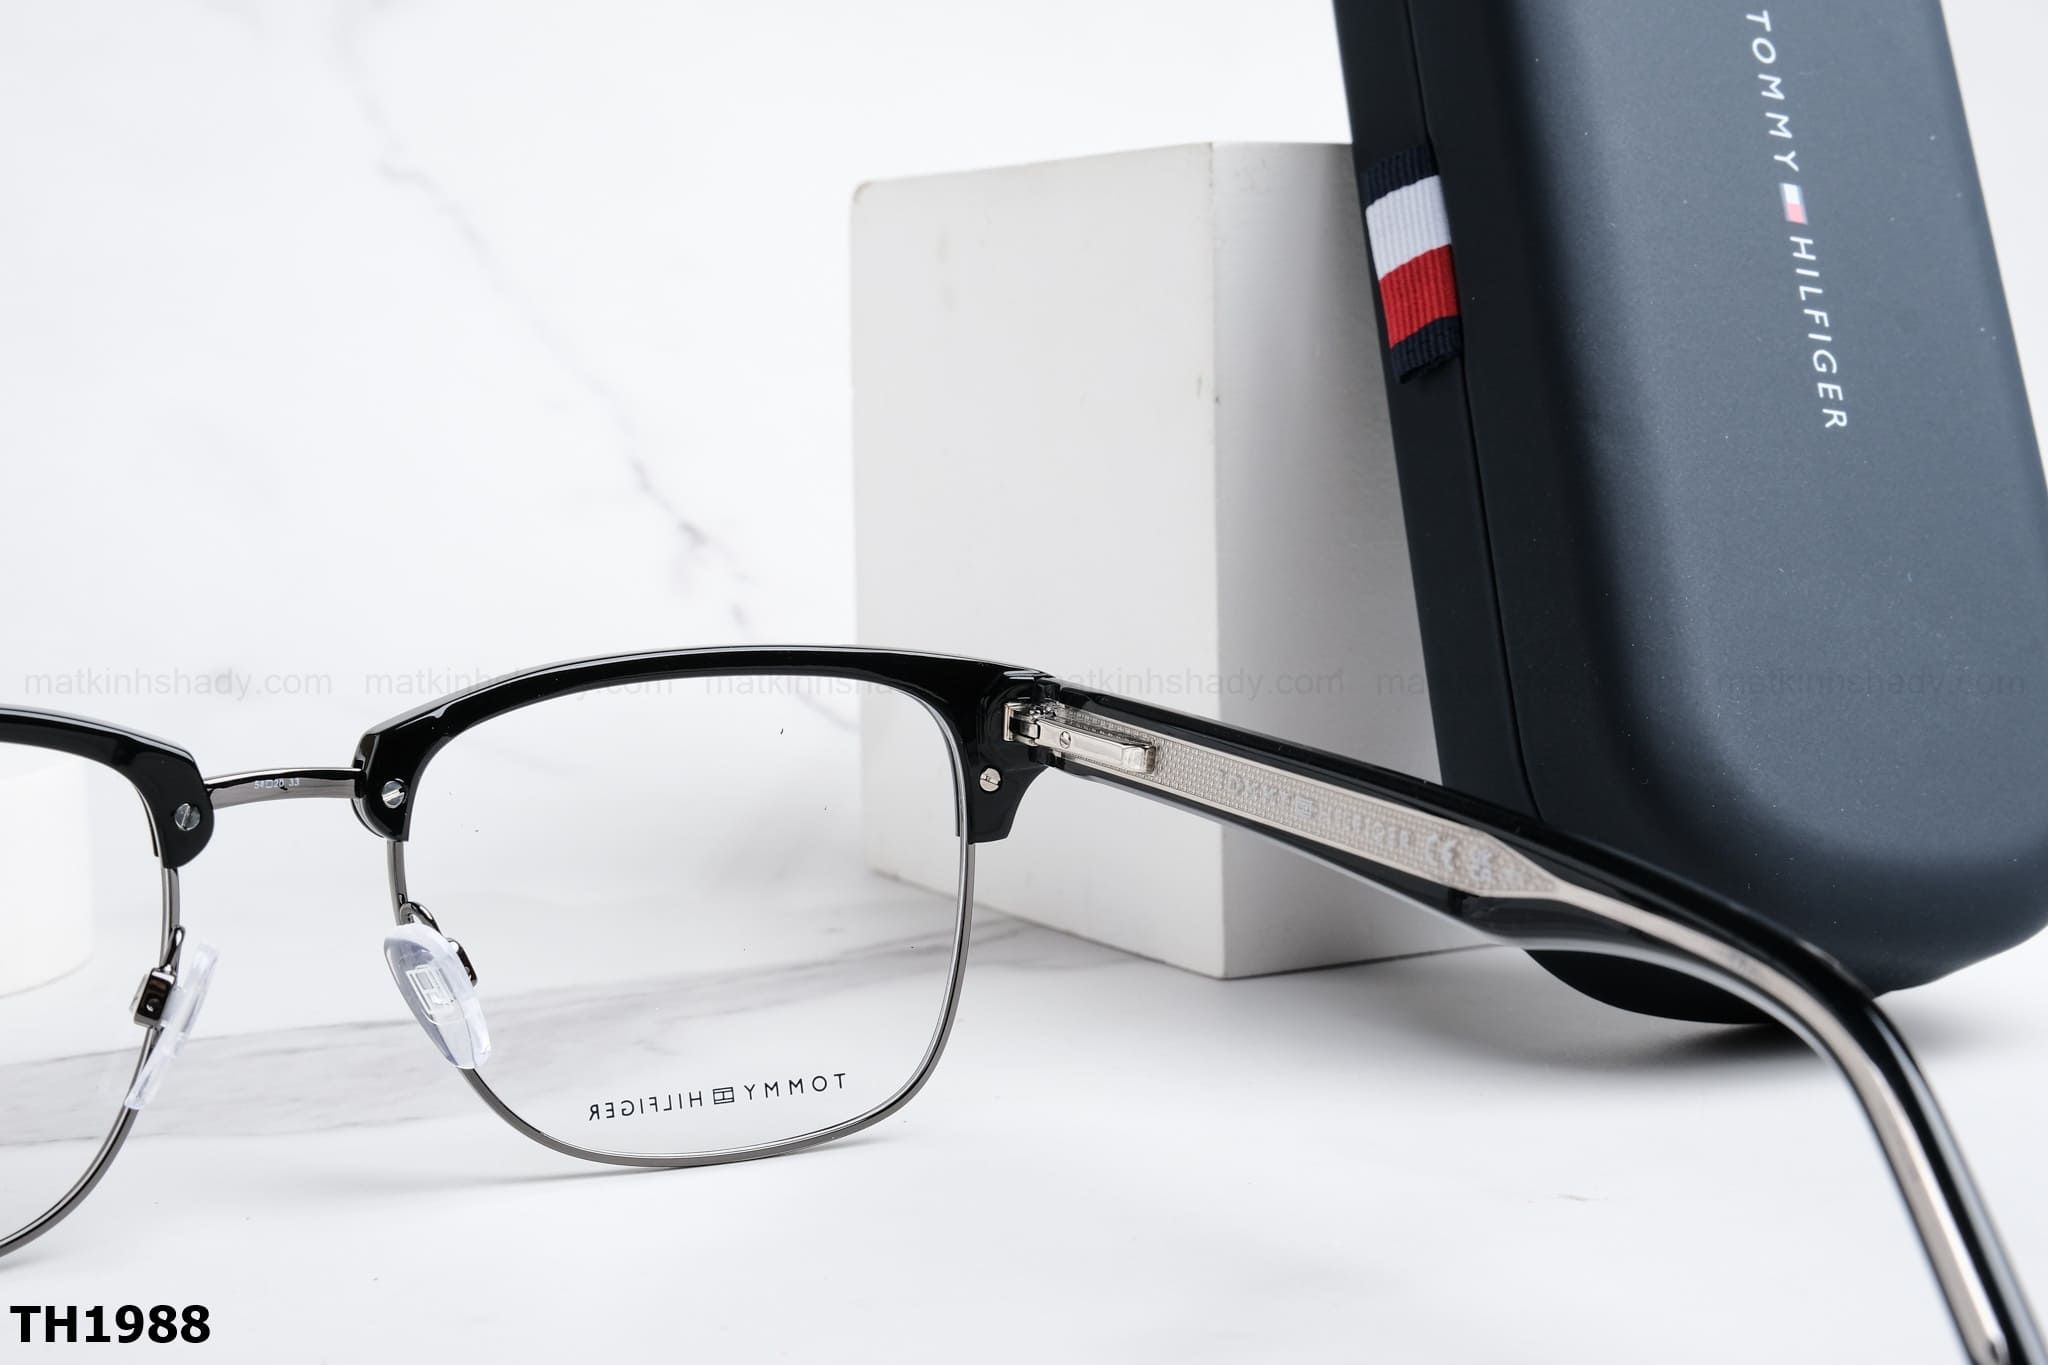  Tommy Hilfiger Eyewear - Glasses - TH1988 